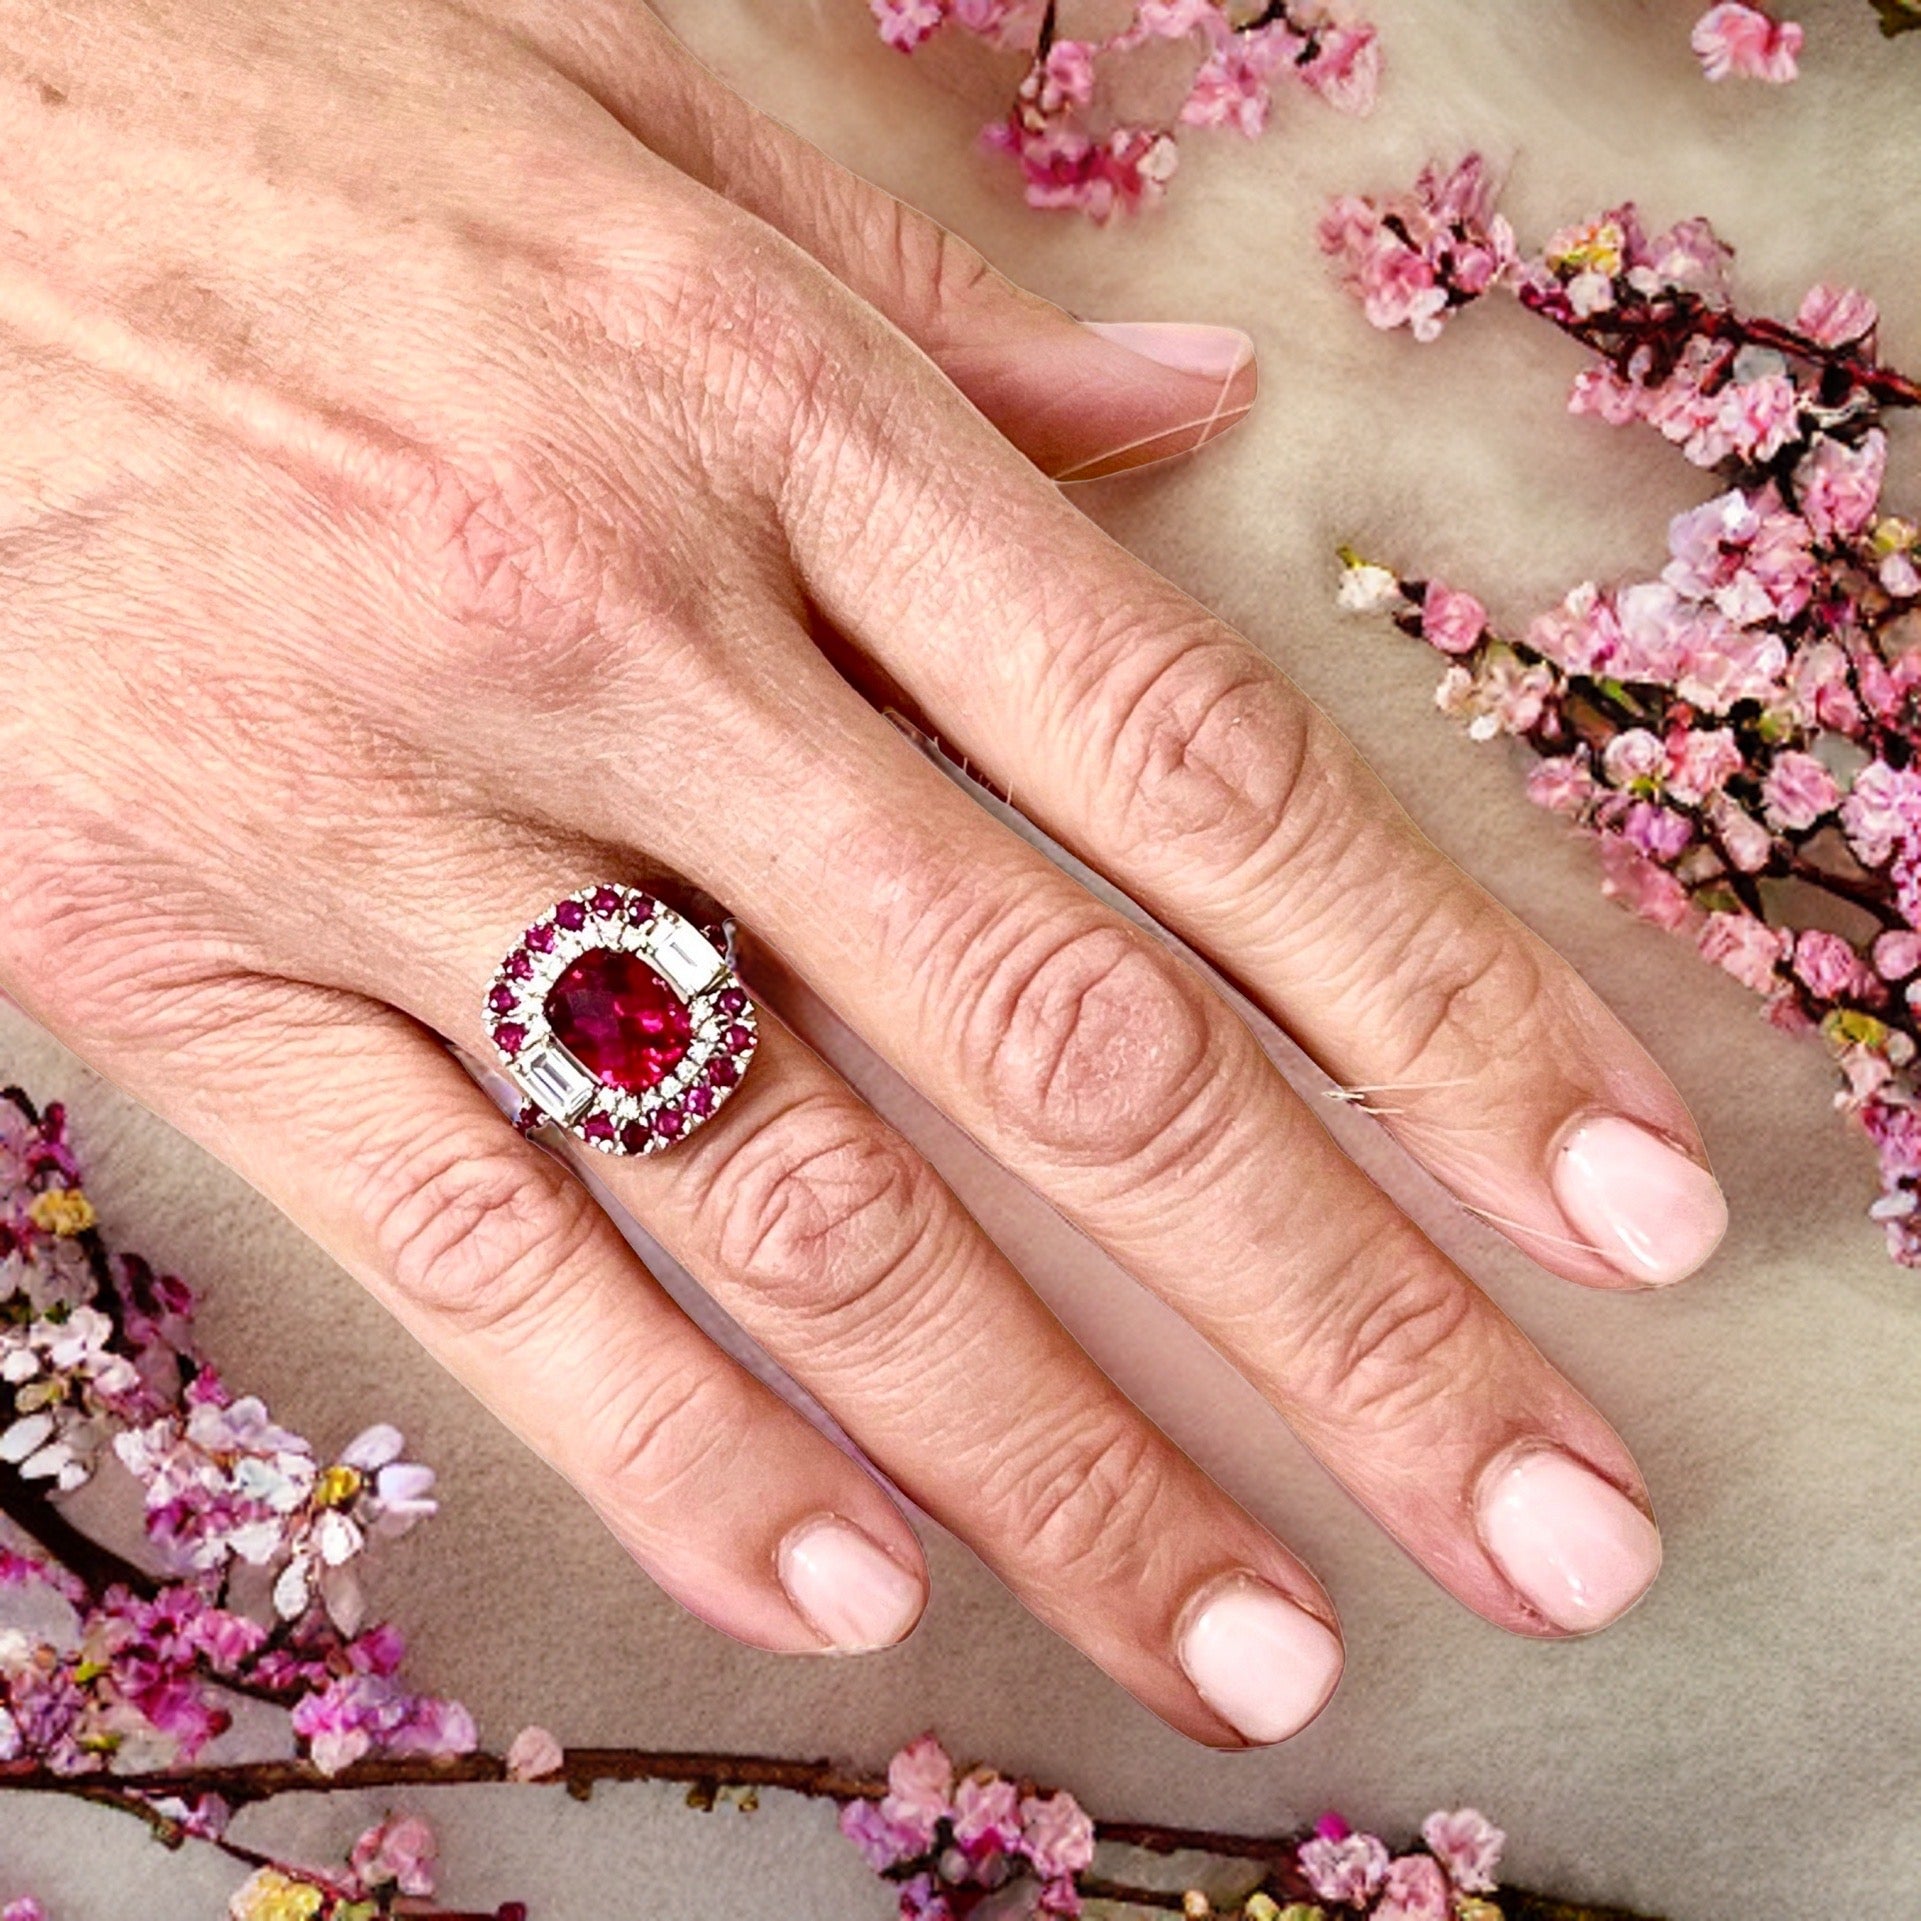 Tourmaline Ruby Sapphire Diamond Ring 14k Gold 5.1 TCW GIA Certified $12,750 210737 - Certified Fine Jewelry